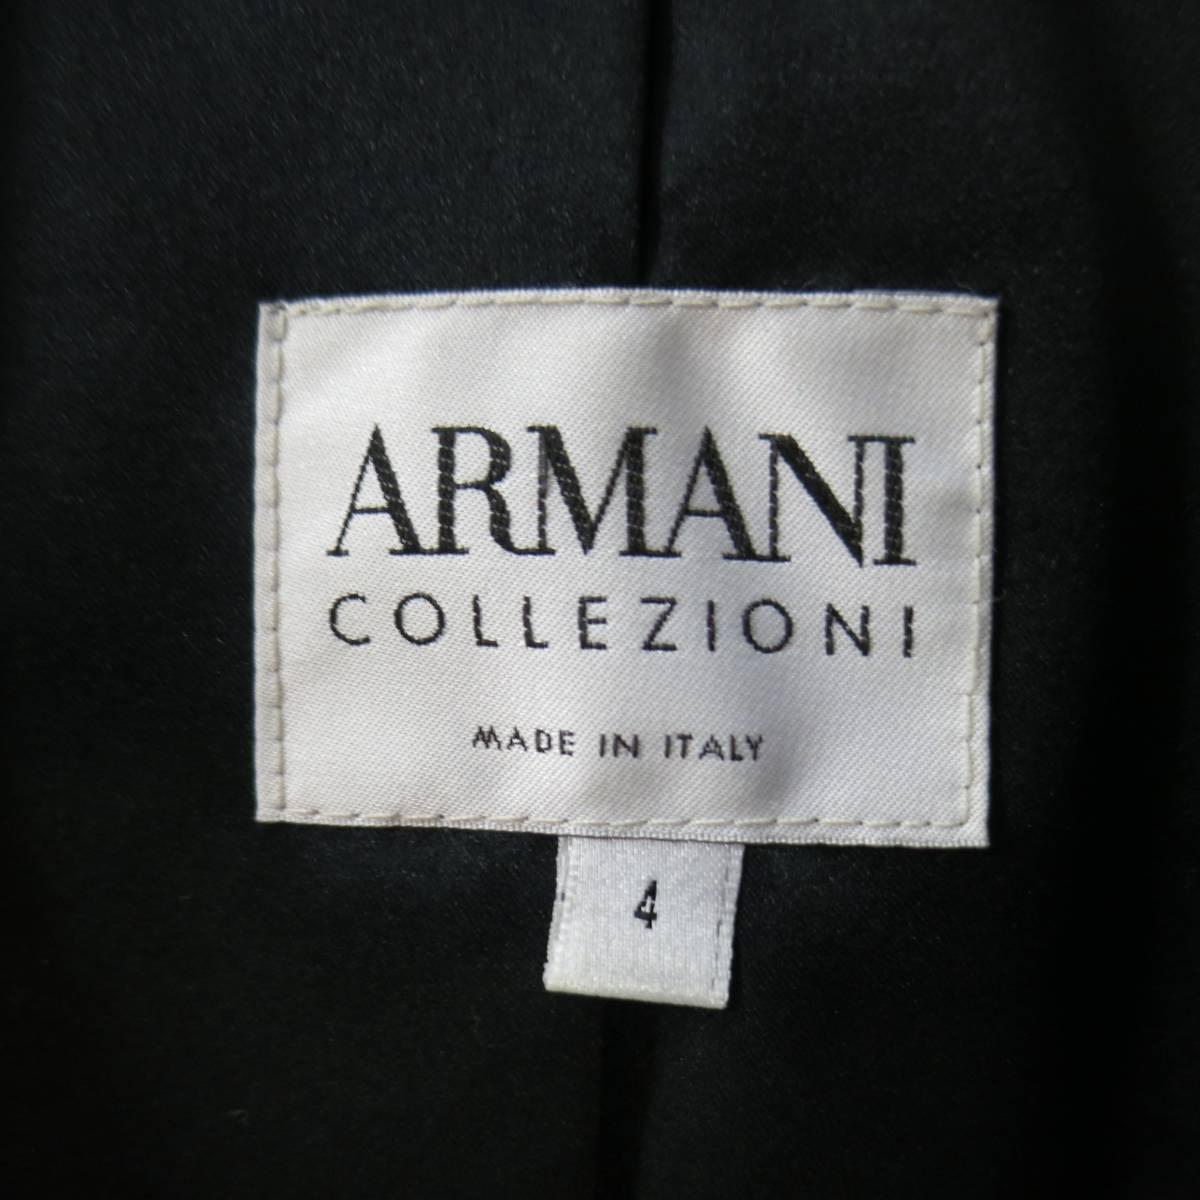 ARMANI COLLEZIONI Jacket Size 4 Black Velvet Under Ruffle Shawl Collar Tuxedo 1